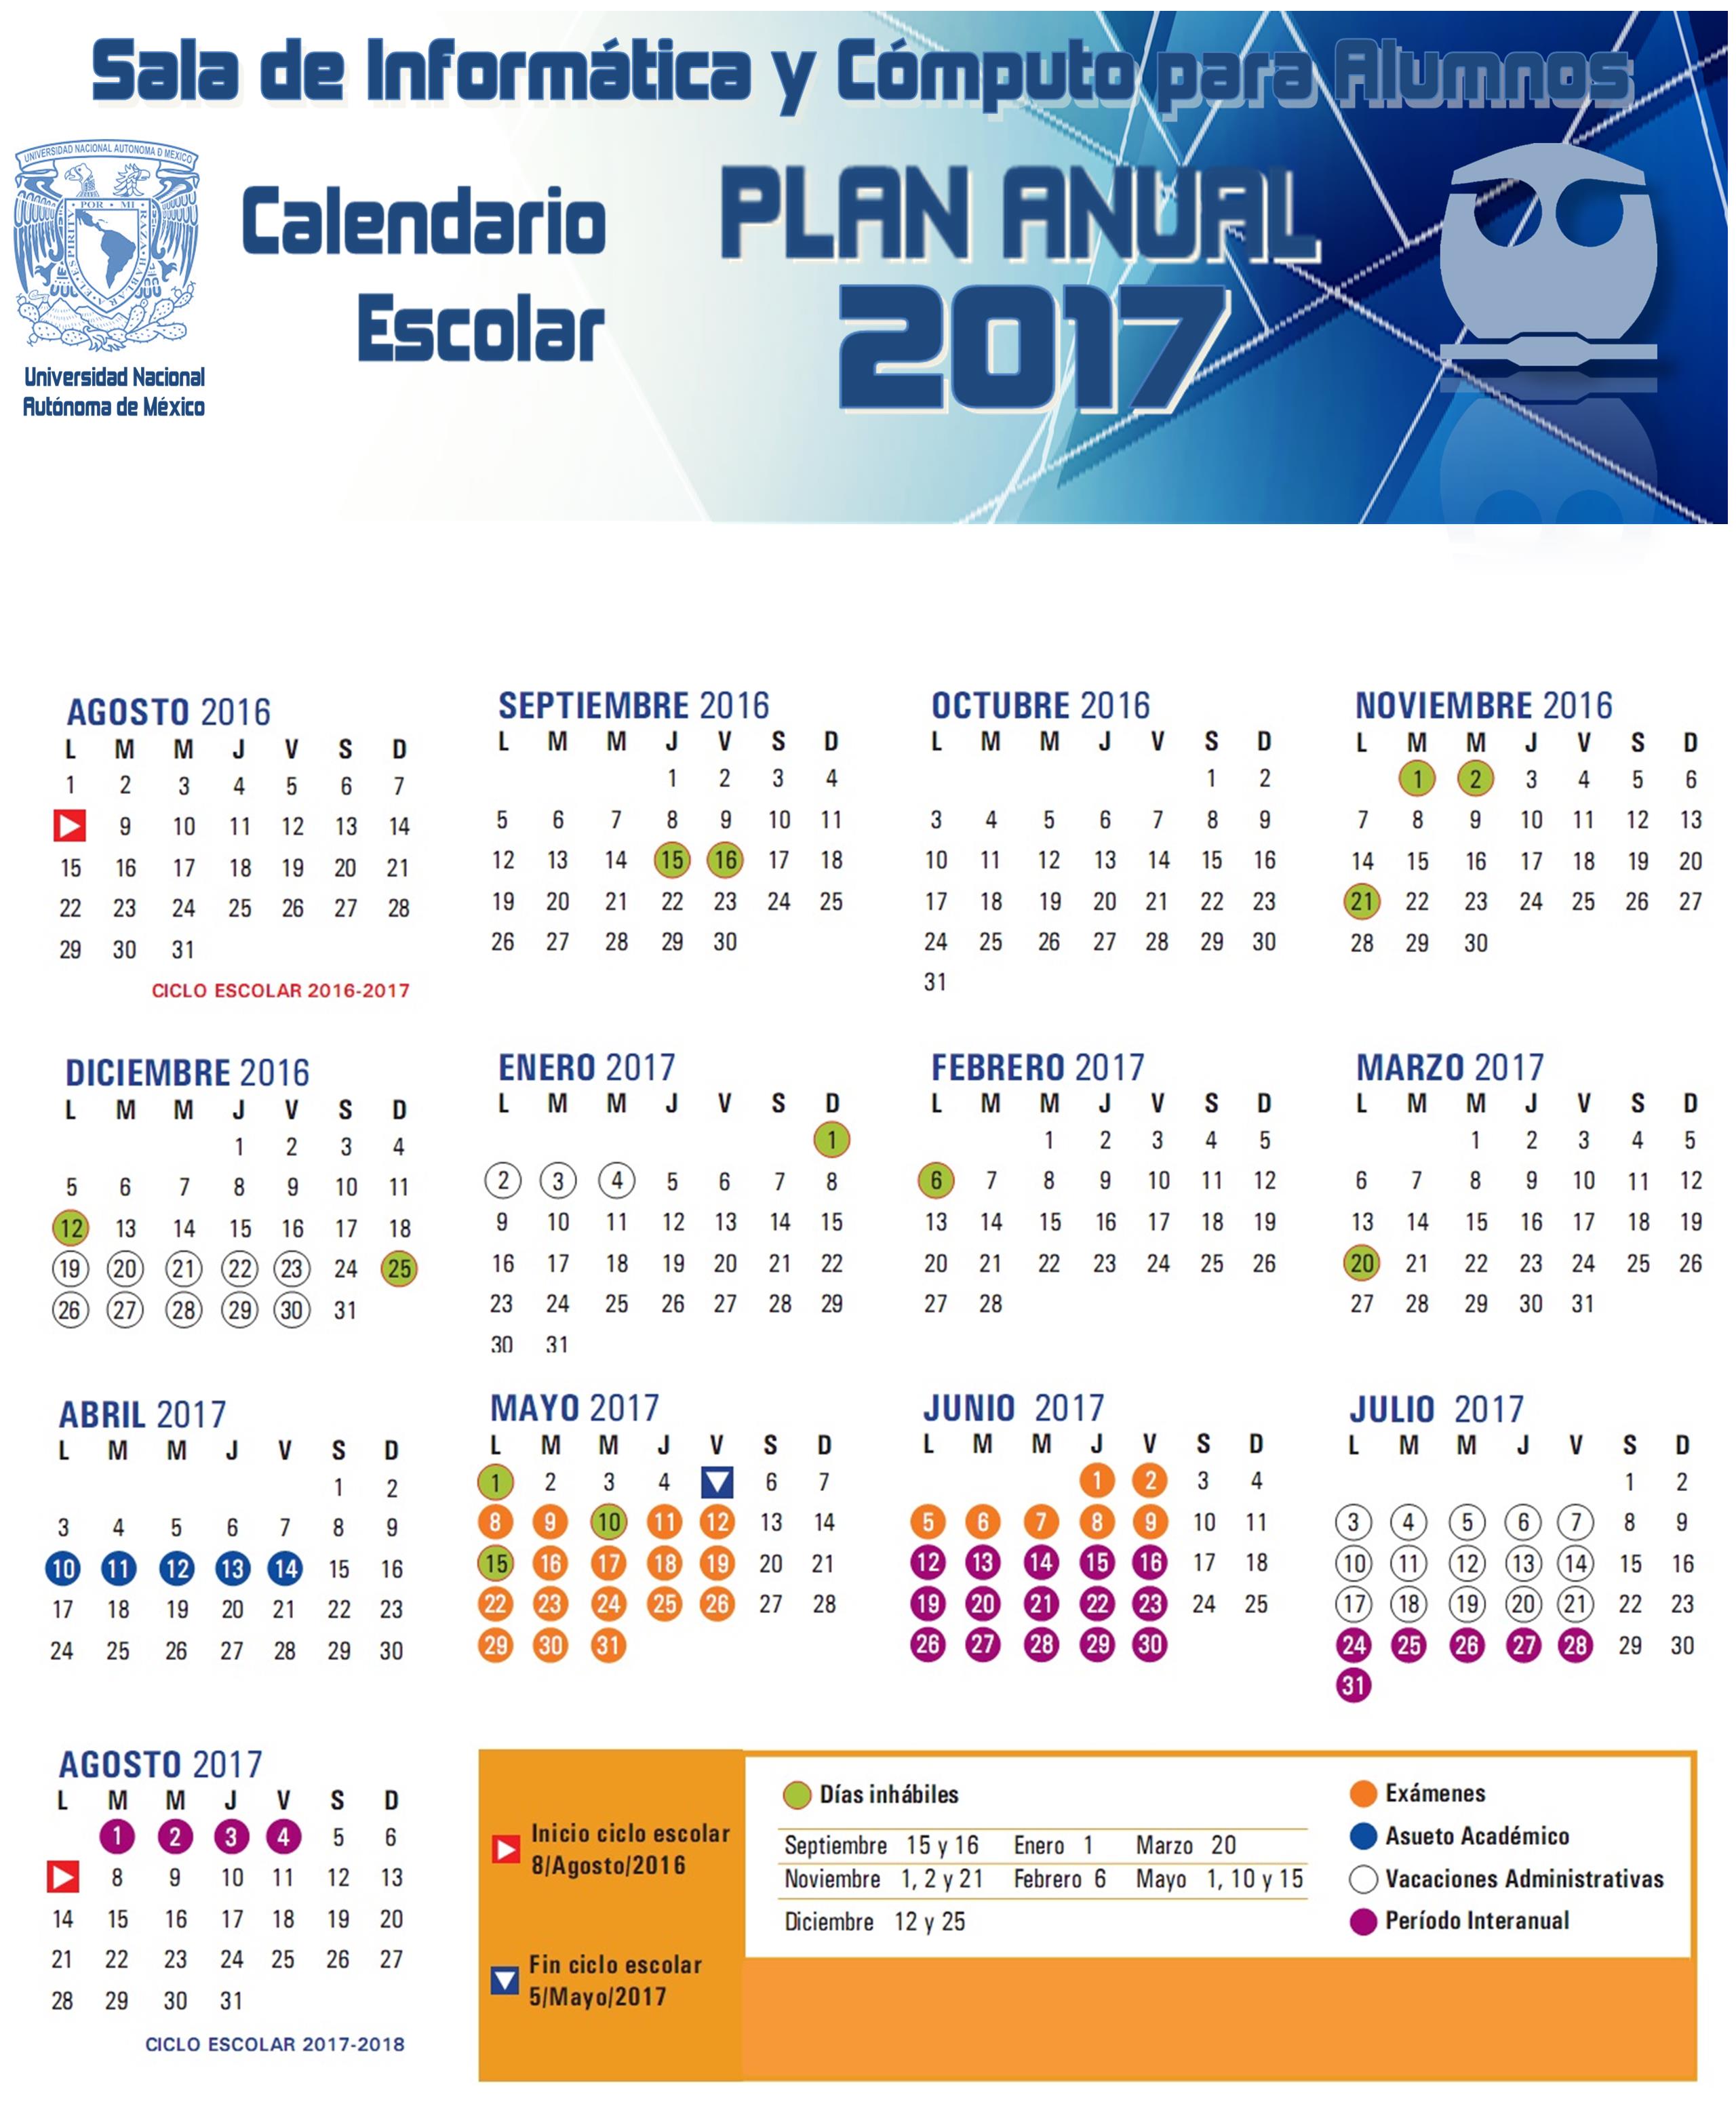 Calendario Anual FQ2017